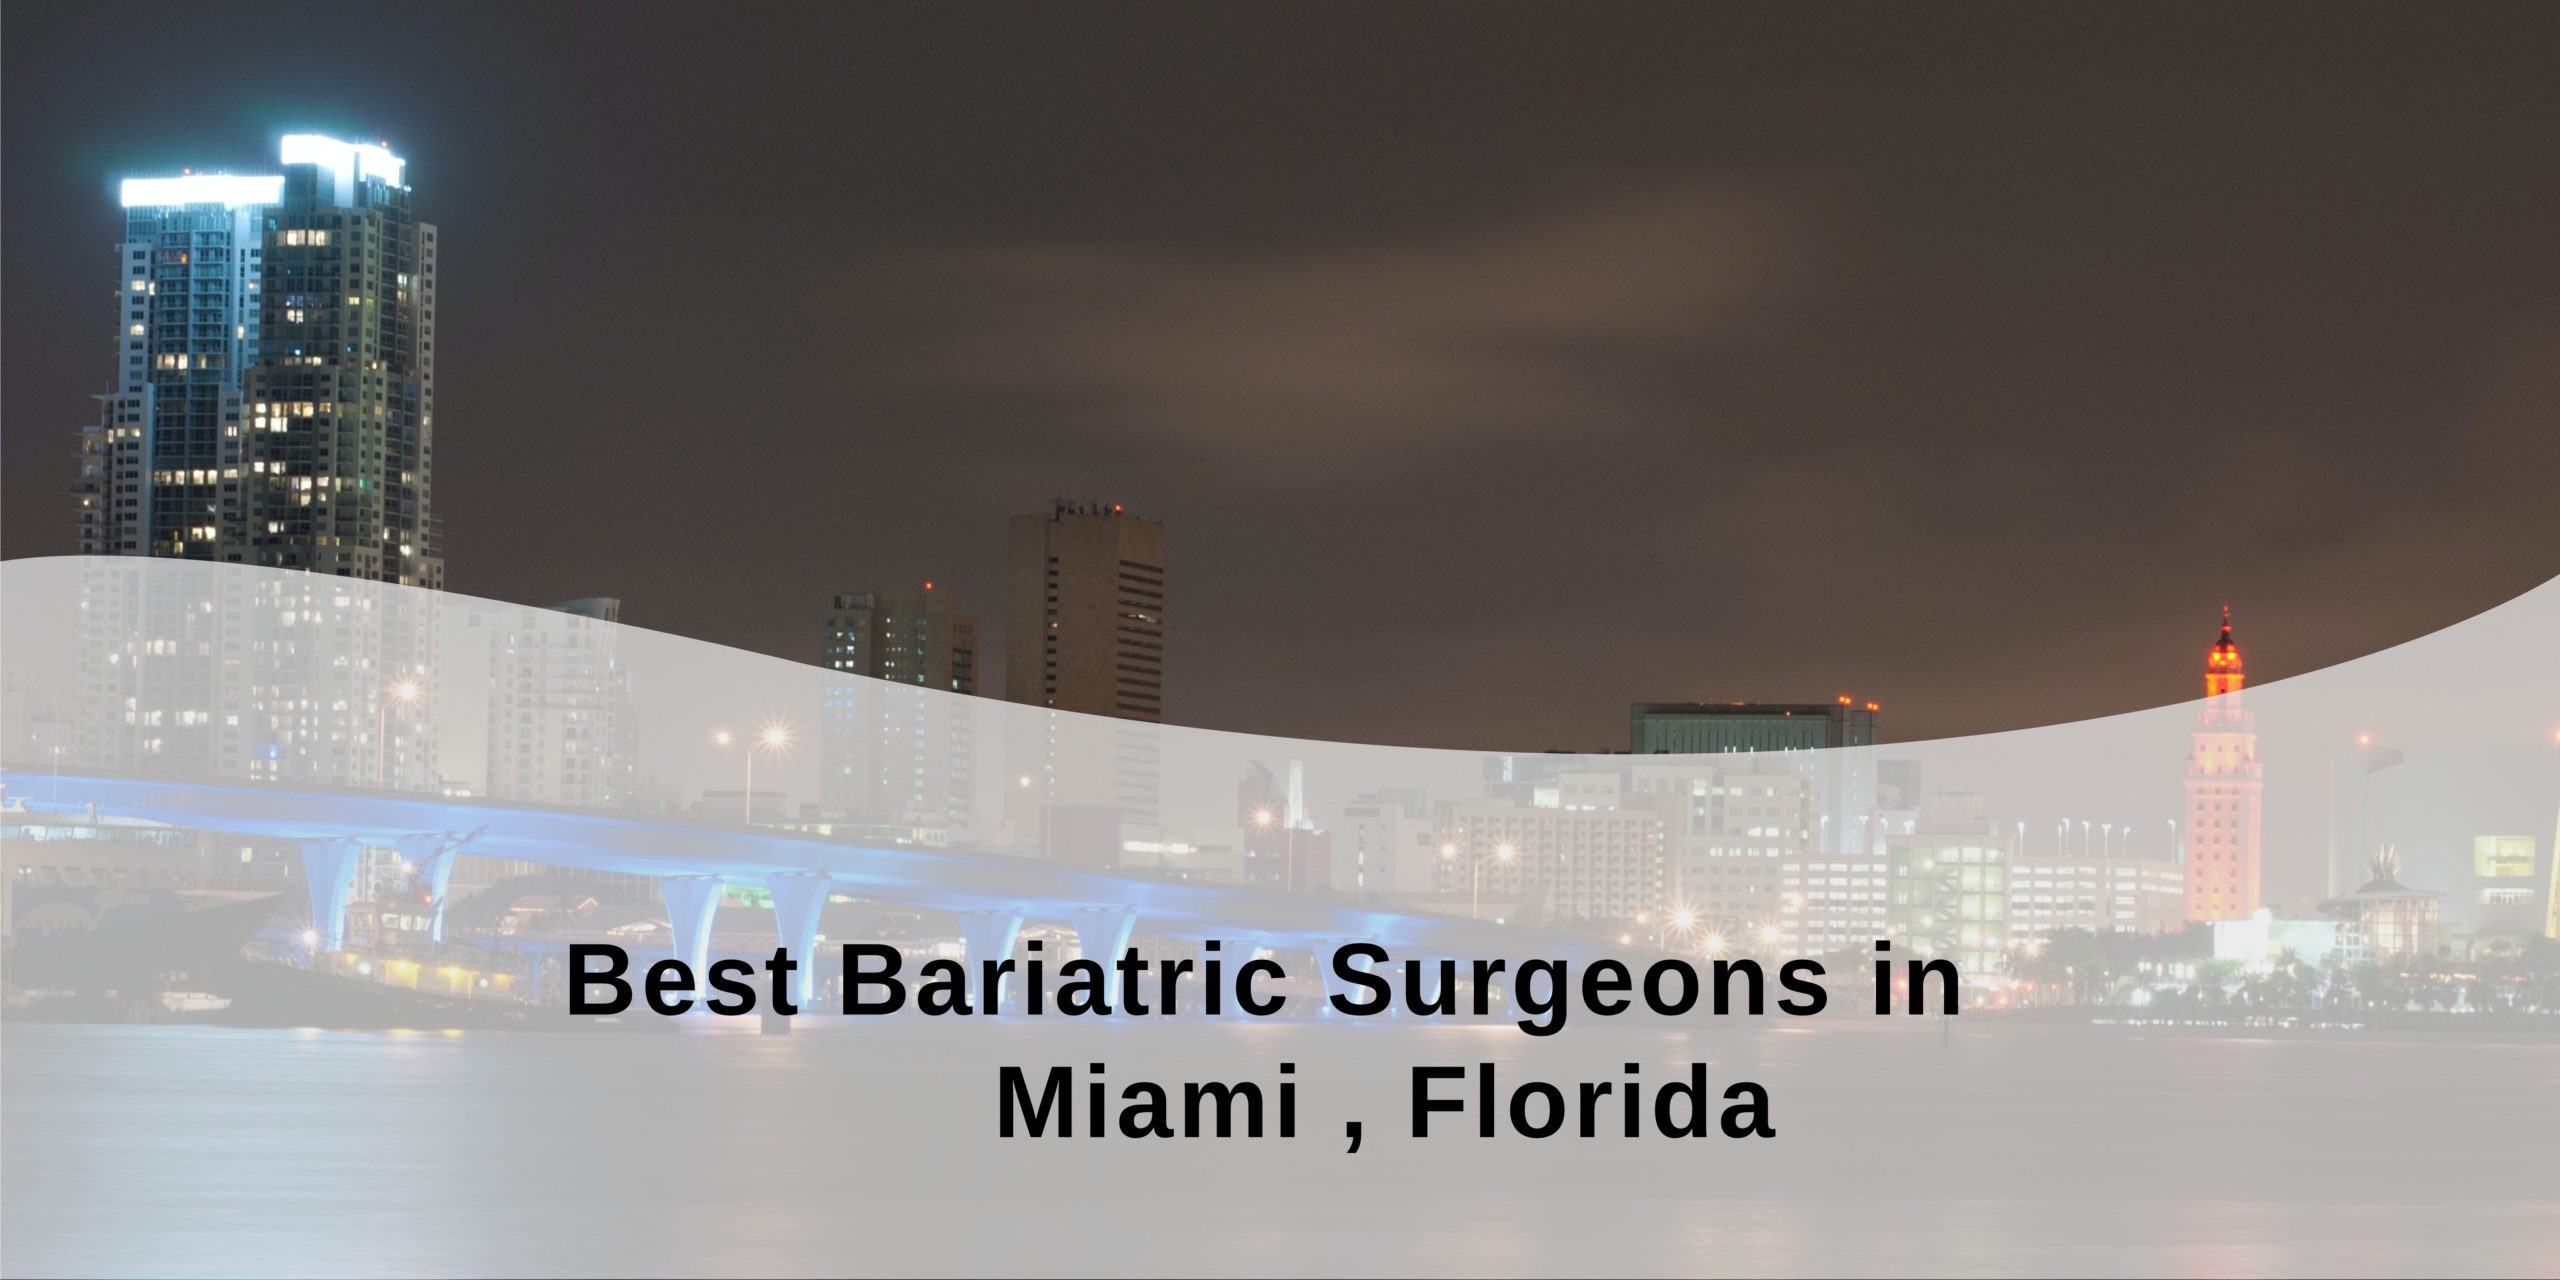 Best Bariatric Surgeons in Miami, Florida